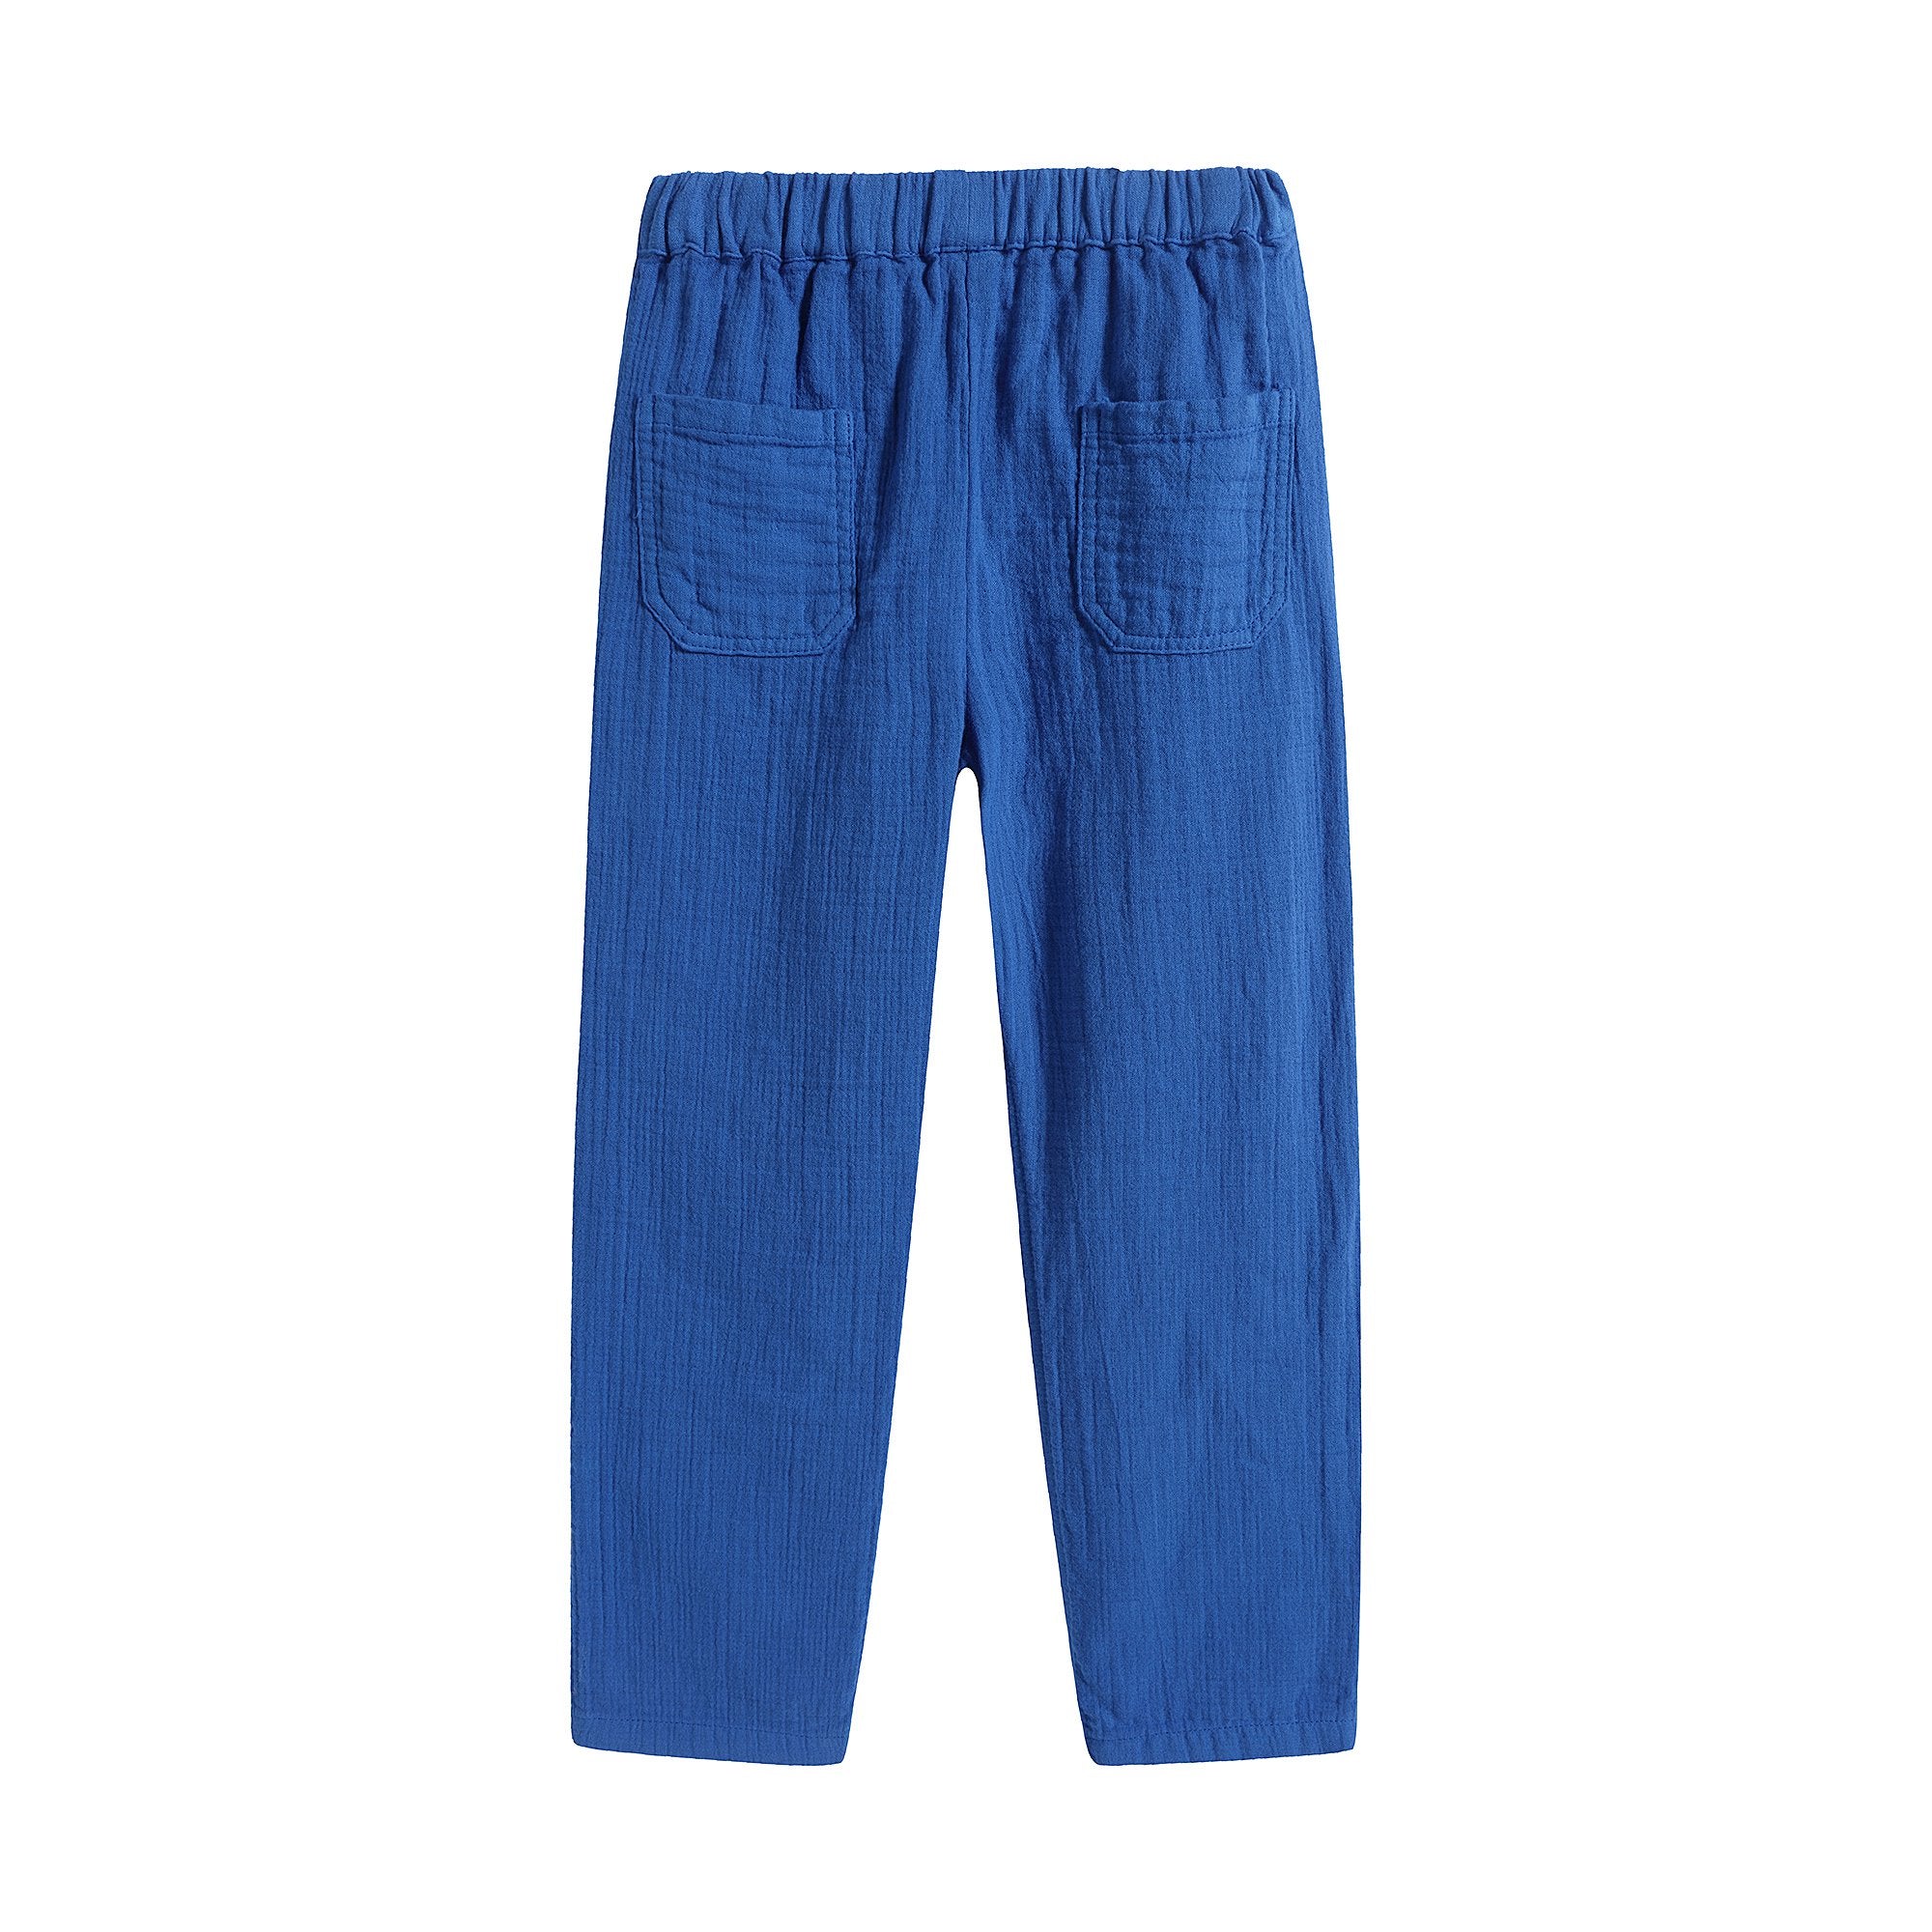 Boys Blue Cotton Trousers